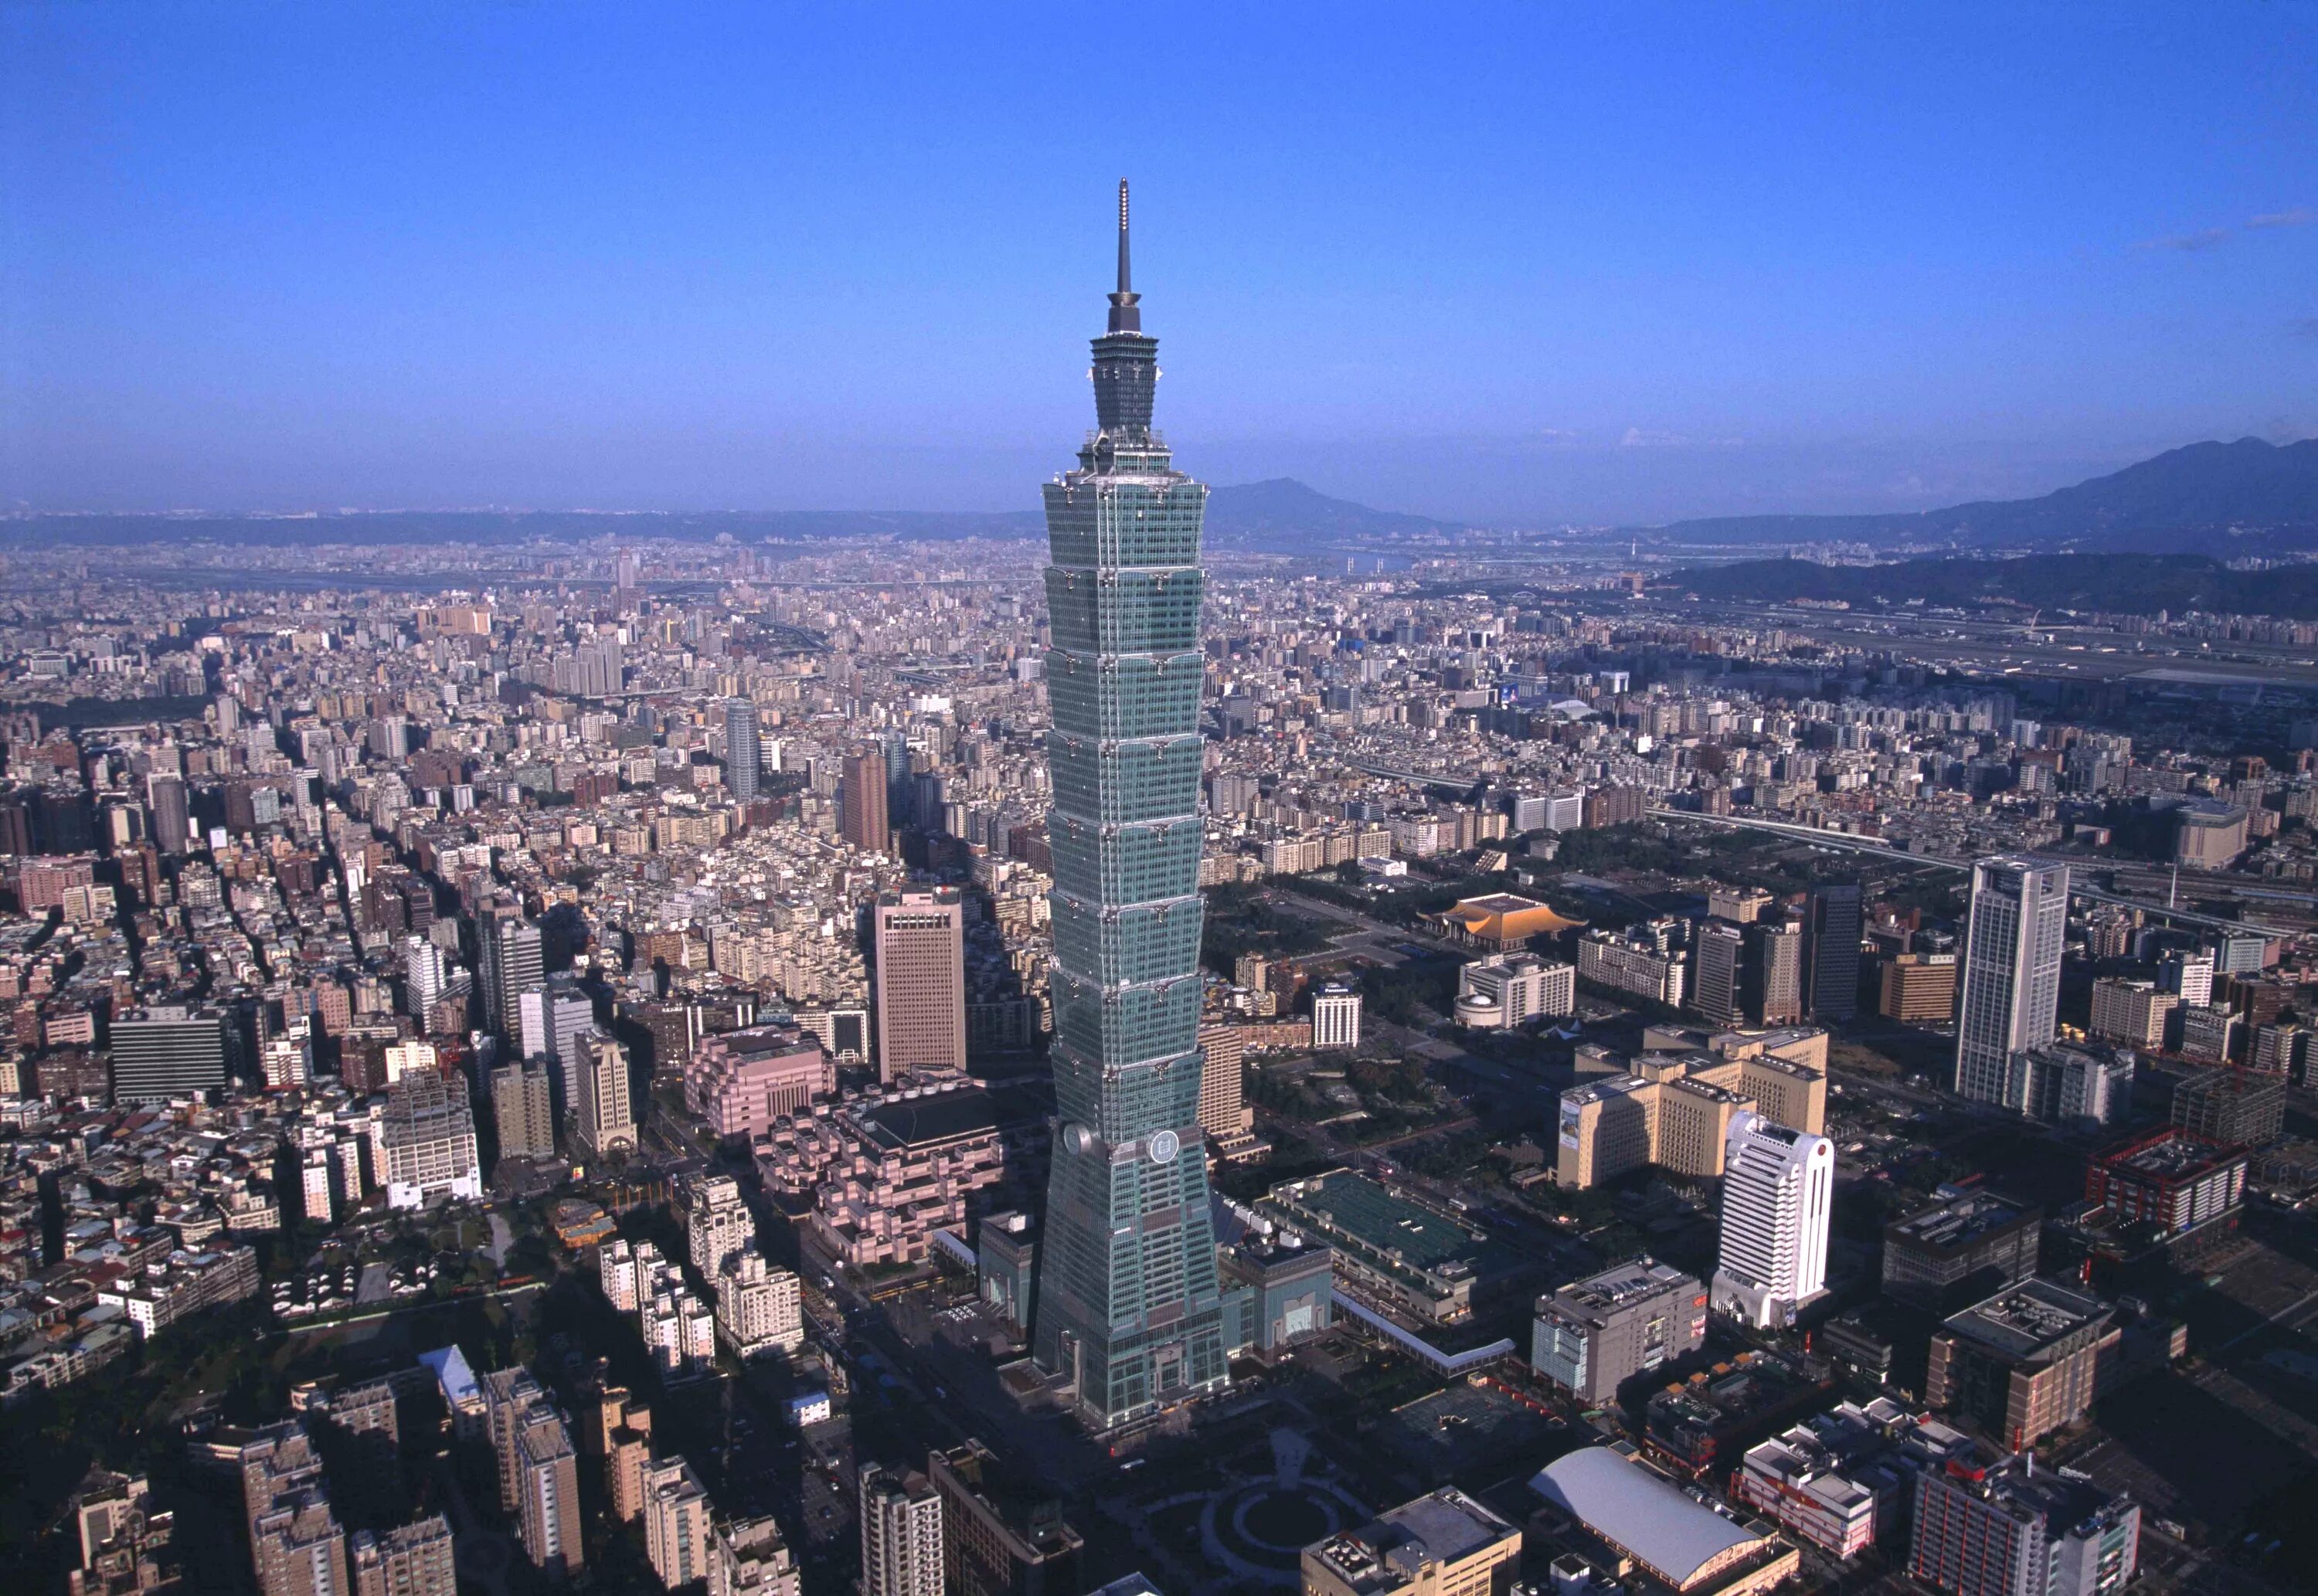 Небоскреб «Тайбэй 101», Тайвань. Тайбэй 101 в Тайване. Здание Taipei 101, Тайвань. Небоскреб "Тайбэй 101" в Тайбэе.